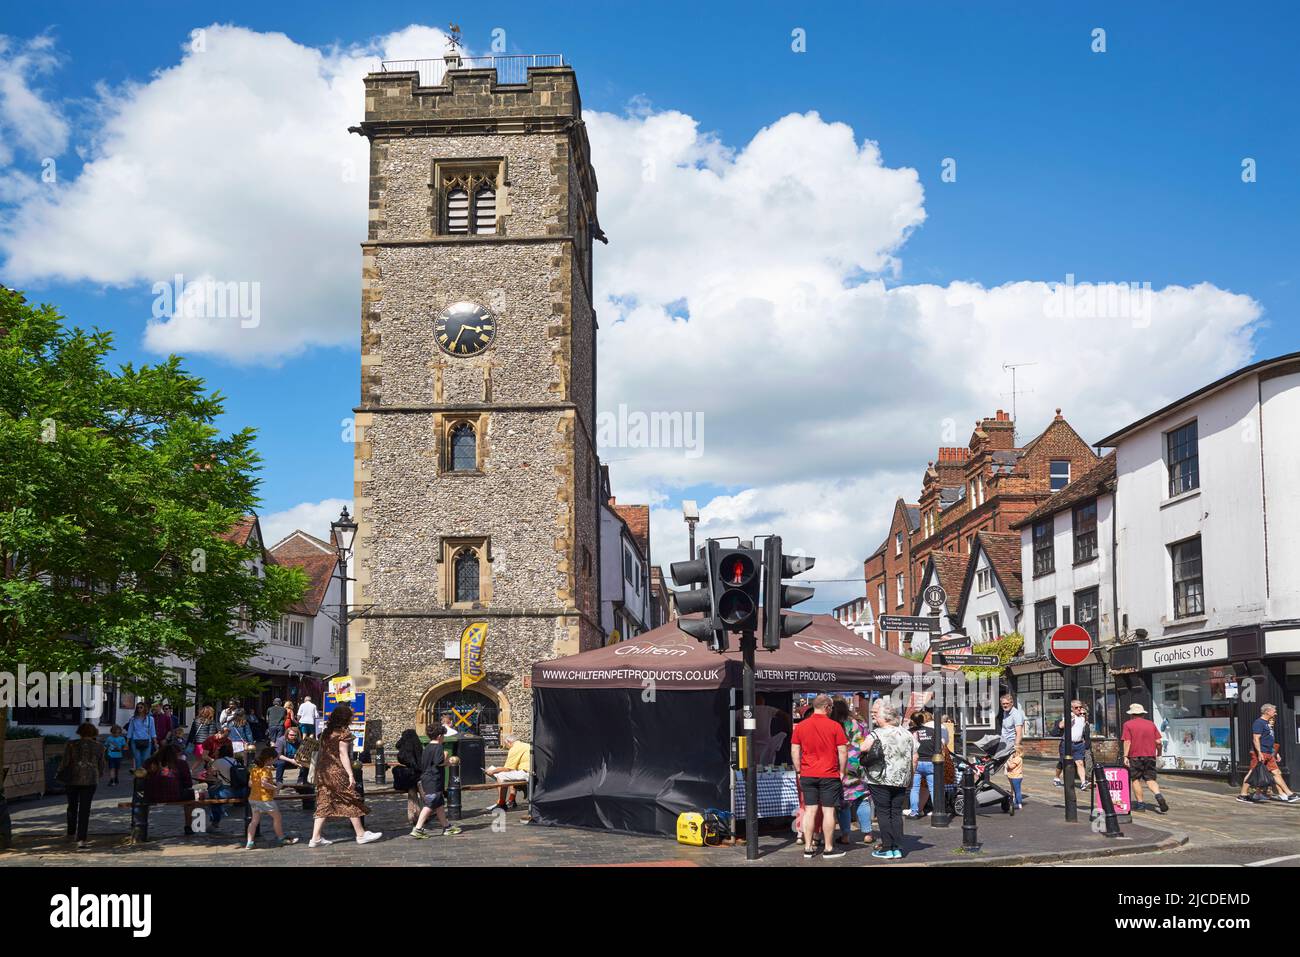 La torre de reloj medieval del siglo 15th y el mercado en el centro comercial Christopher Place, en el centro de St Albans, Hertfordshire, sudeste de Inglaterra Foto de stock